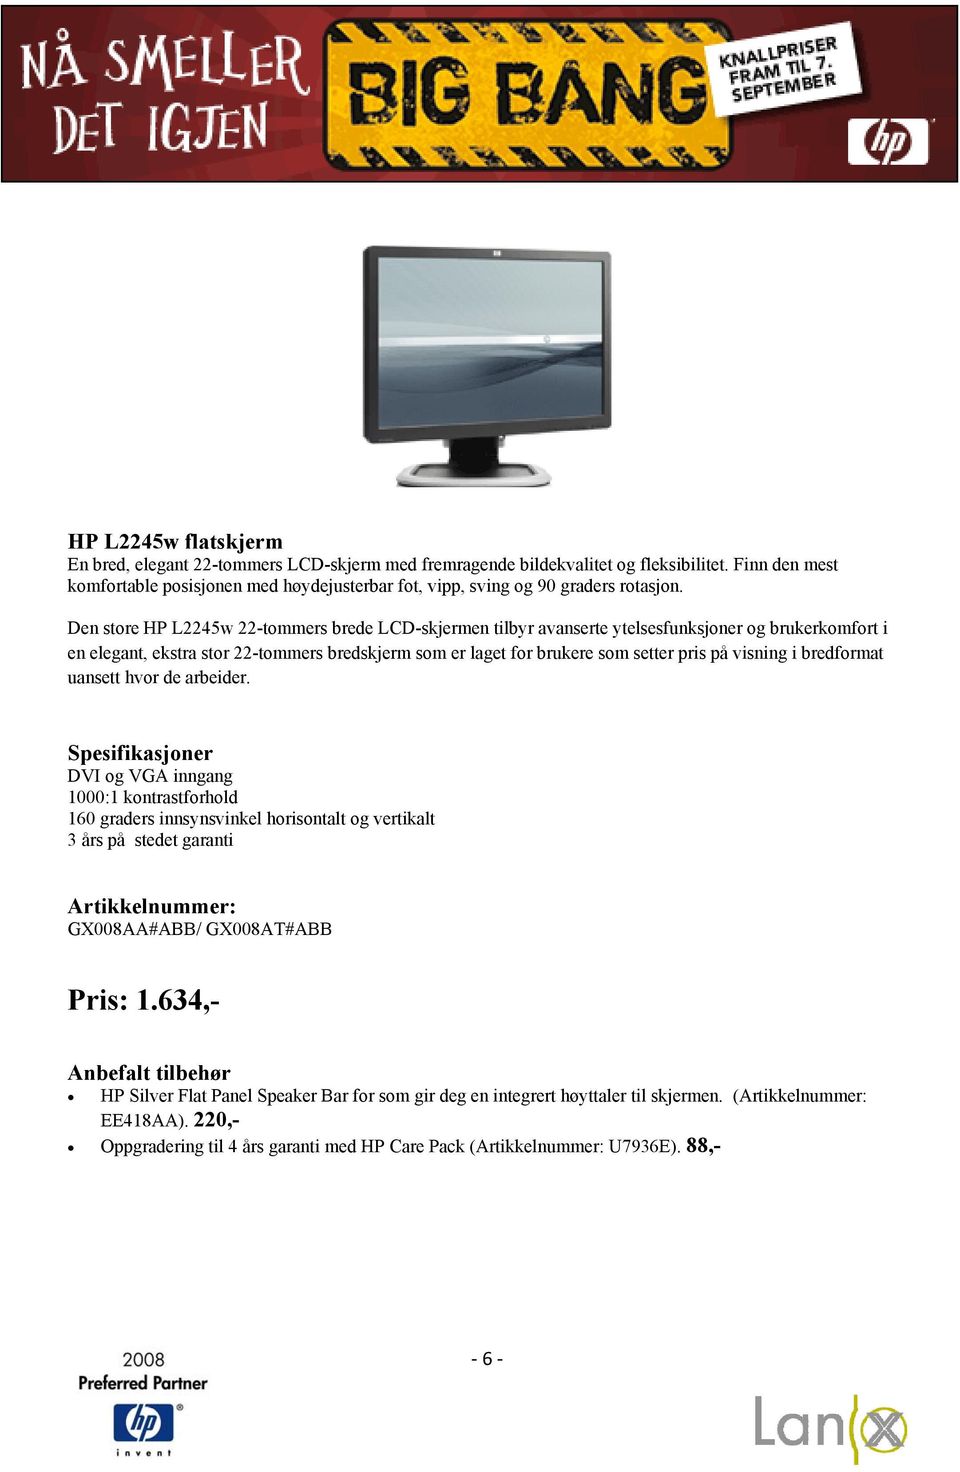 Den store HP L2245w 22-tommers brede LCD-skjermen tilbyr avanserte ytelsesfunksjoner og brukerkomfort i en elegant, ekstra stor 22-tommers bredskjerm som er laget for brukere som setter pris